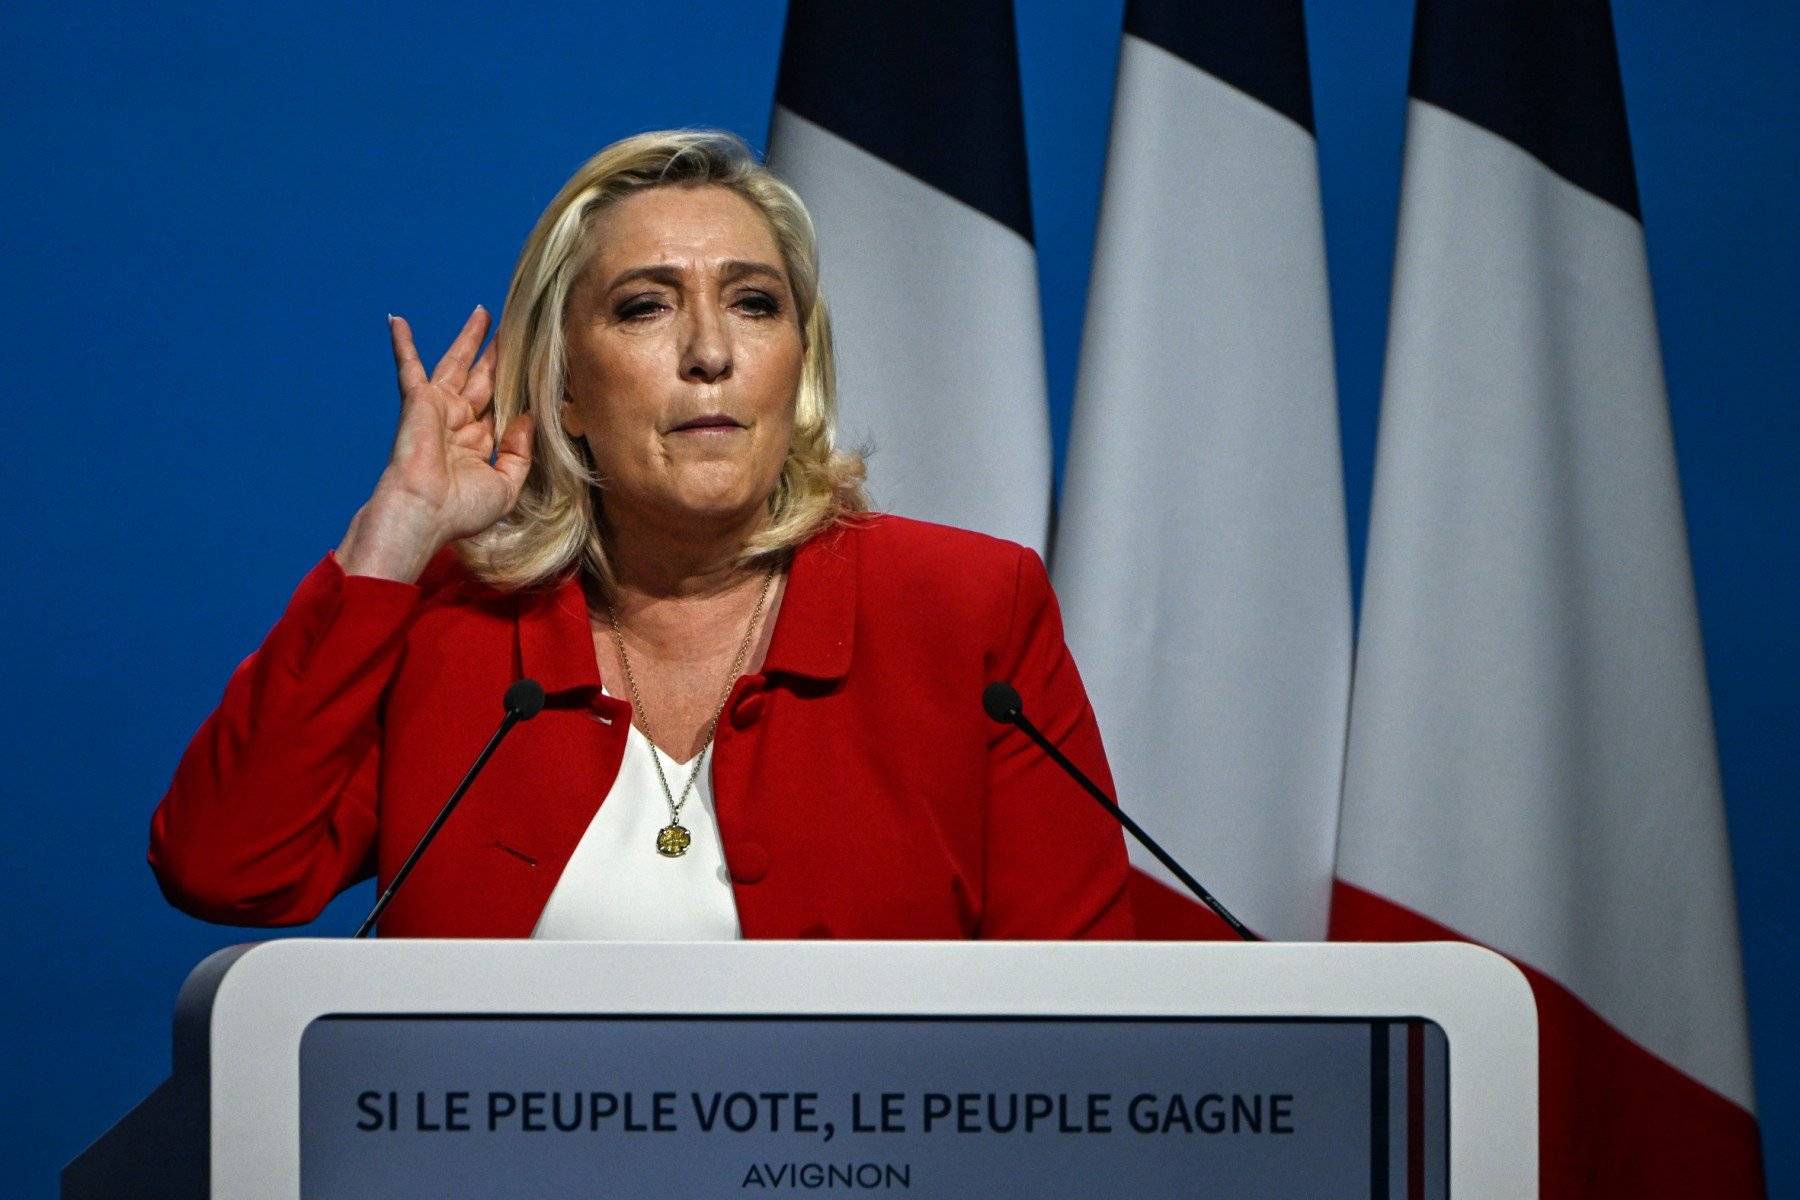 Kobieta, blondynka, w czerwonej marynarce na scenie nadstawia ucha by usłyszeć pytanie z sali. Marine Le Pen